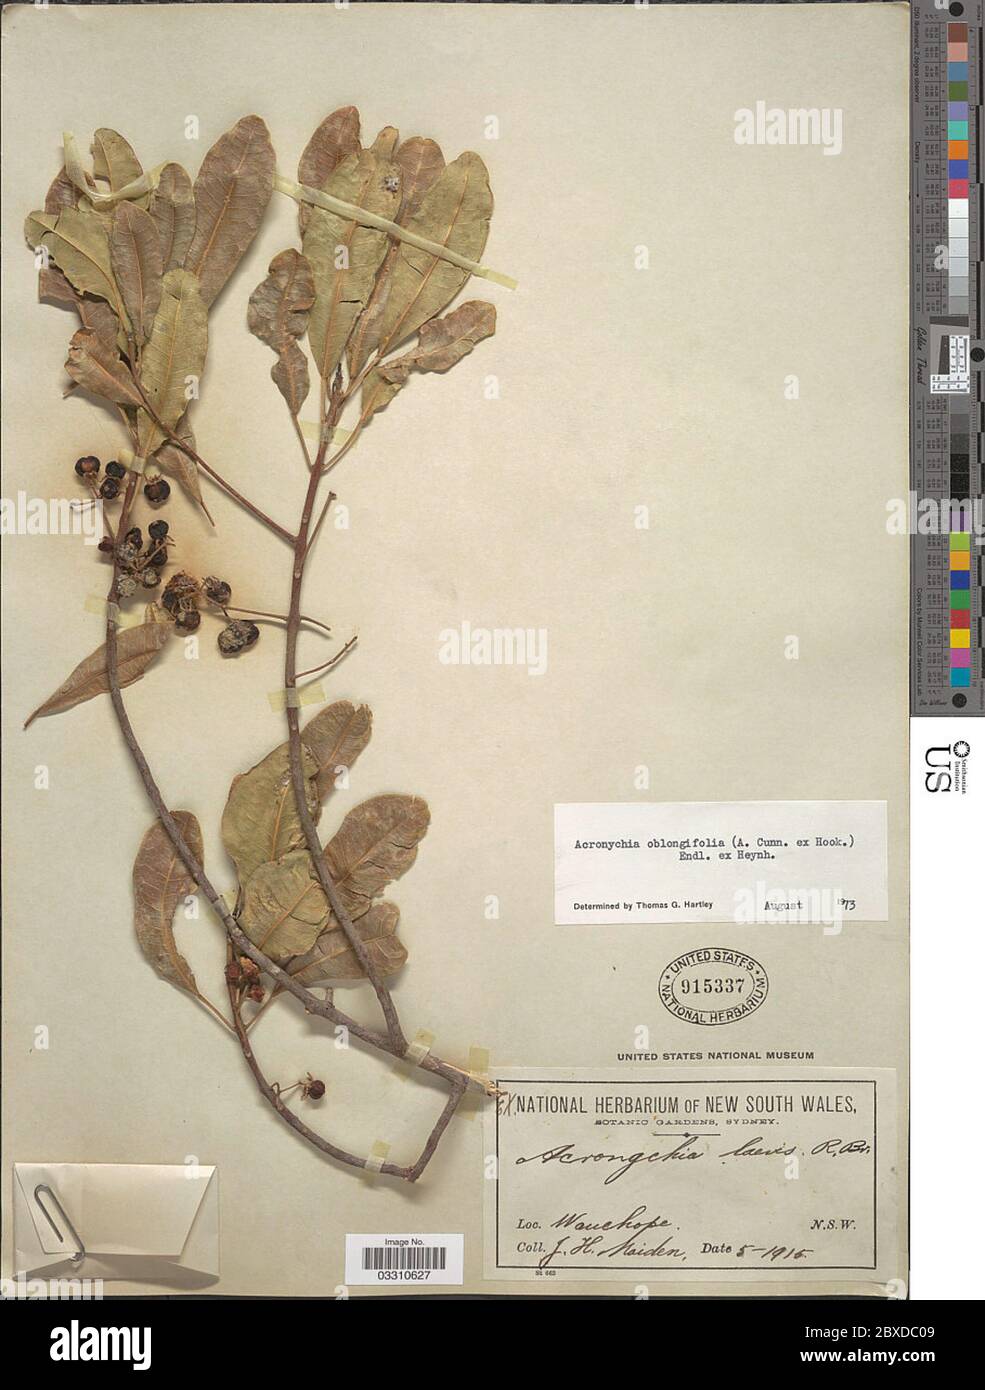 Acronychia oblongifolia A Cunn ex Hook Endl ex Heynh Acronychia oblongifolia A Cunn ex Hook Endl ex Heynh. Stock Photo